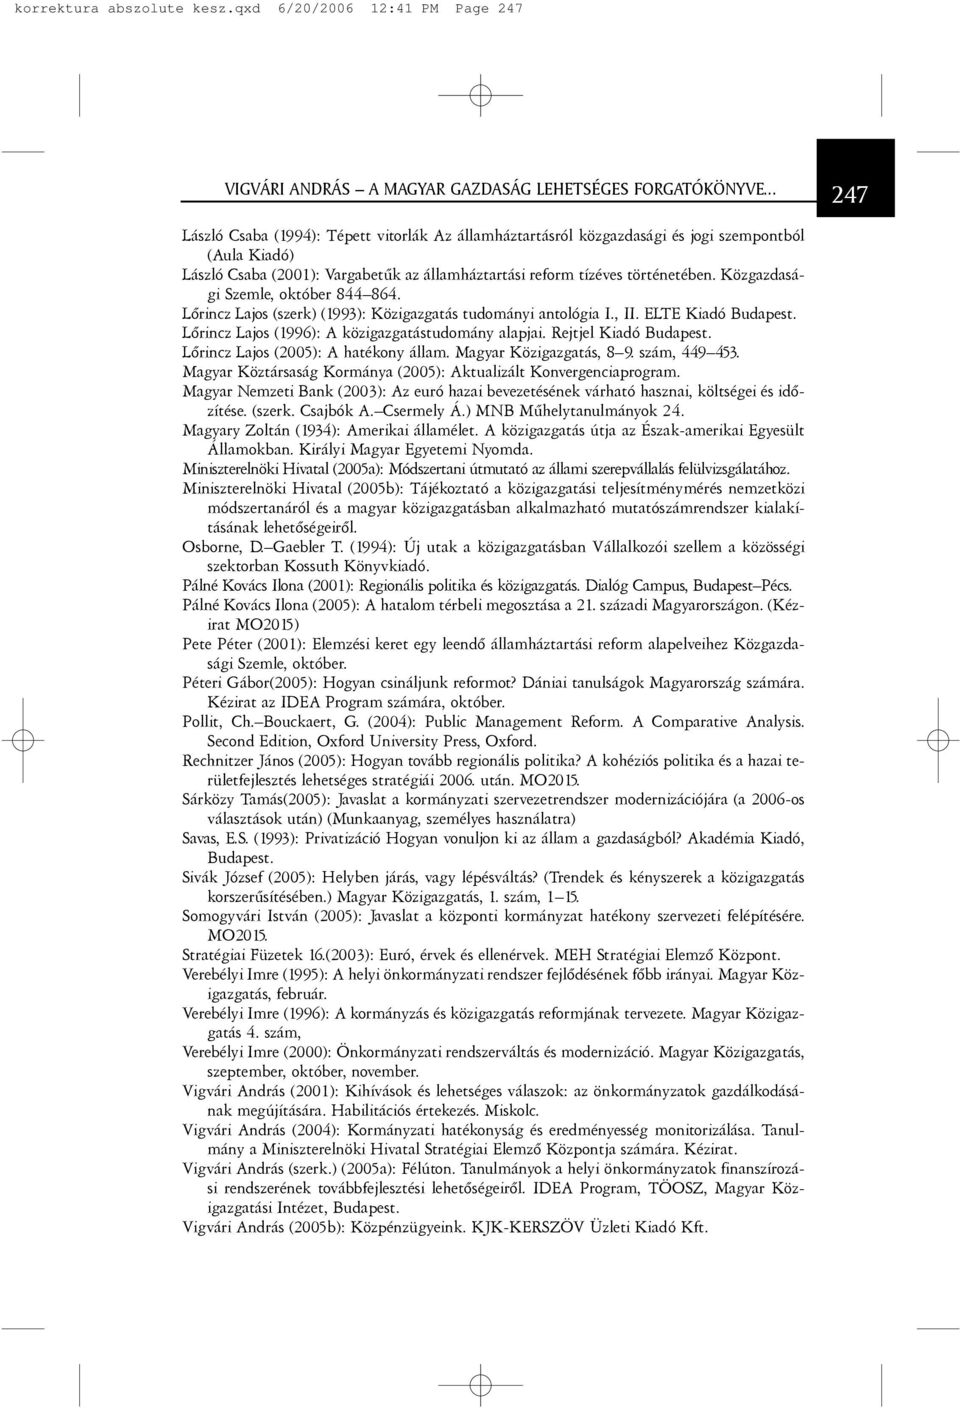 Közgazdasági Szemle, október 844 864. Lõrincz Lajos (szerk) (1993): Közigazgatás tudományi antológia I., II. ELTE Kiadó Budapest. Lõrincz Lajos (1996): A közigazgatástudomány alapjai.